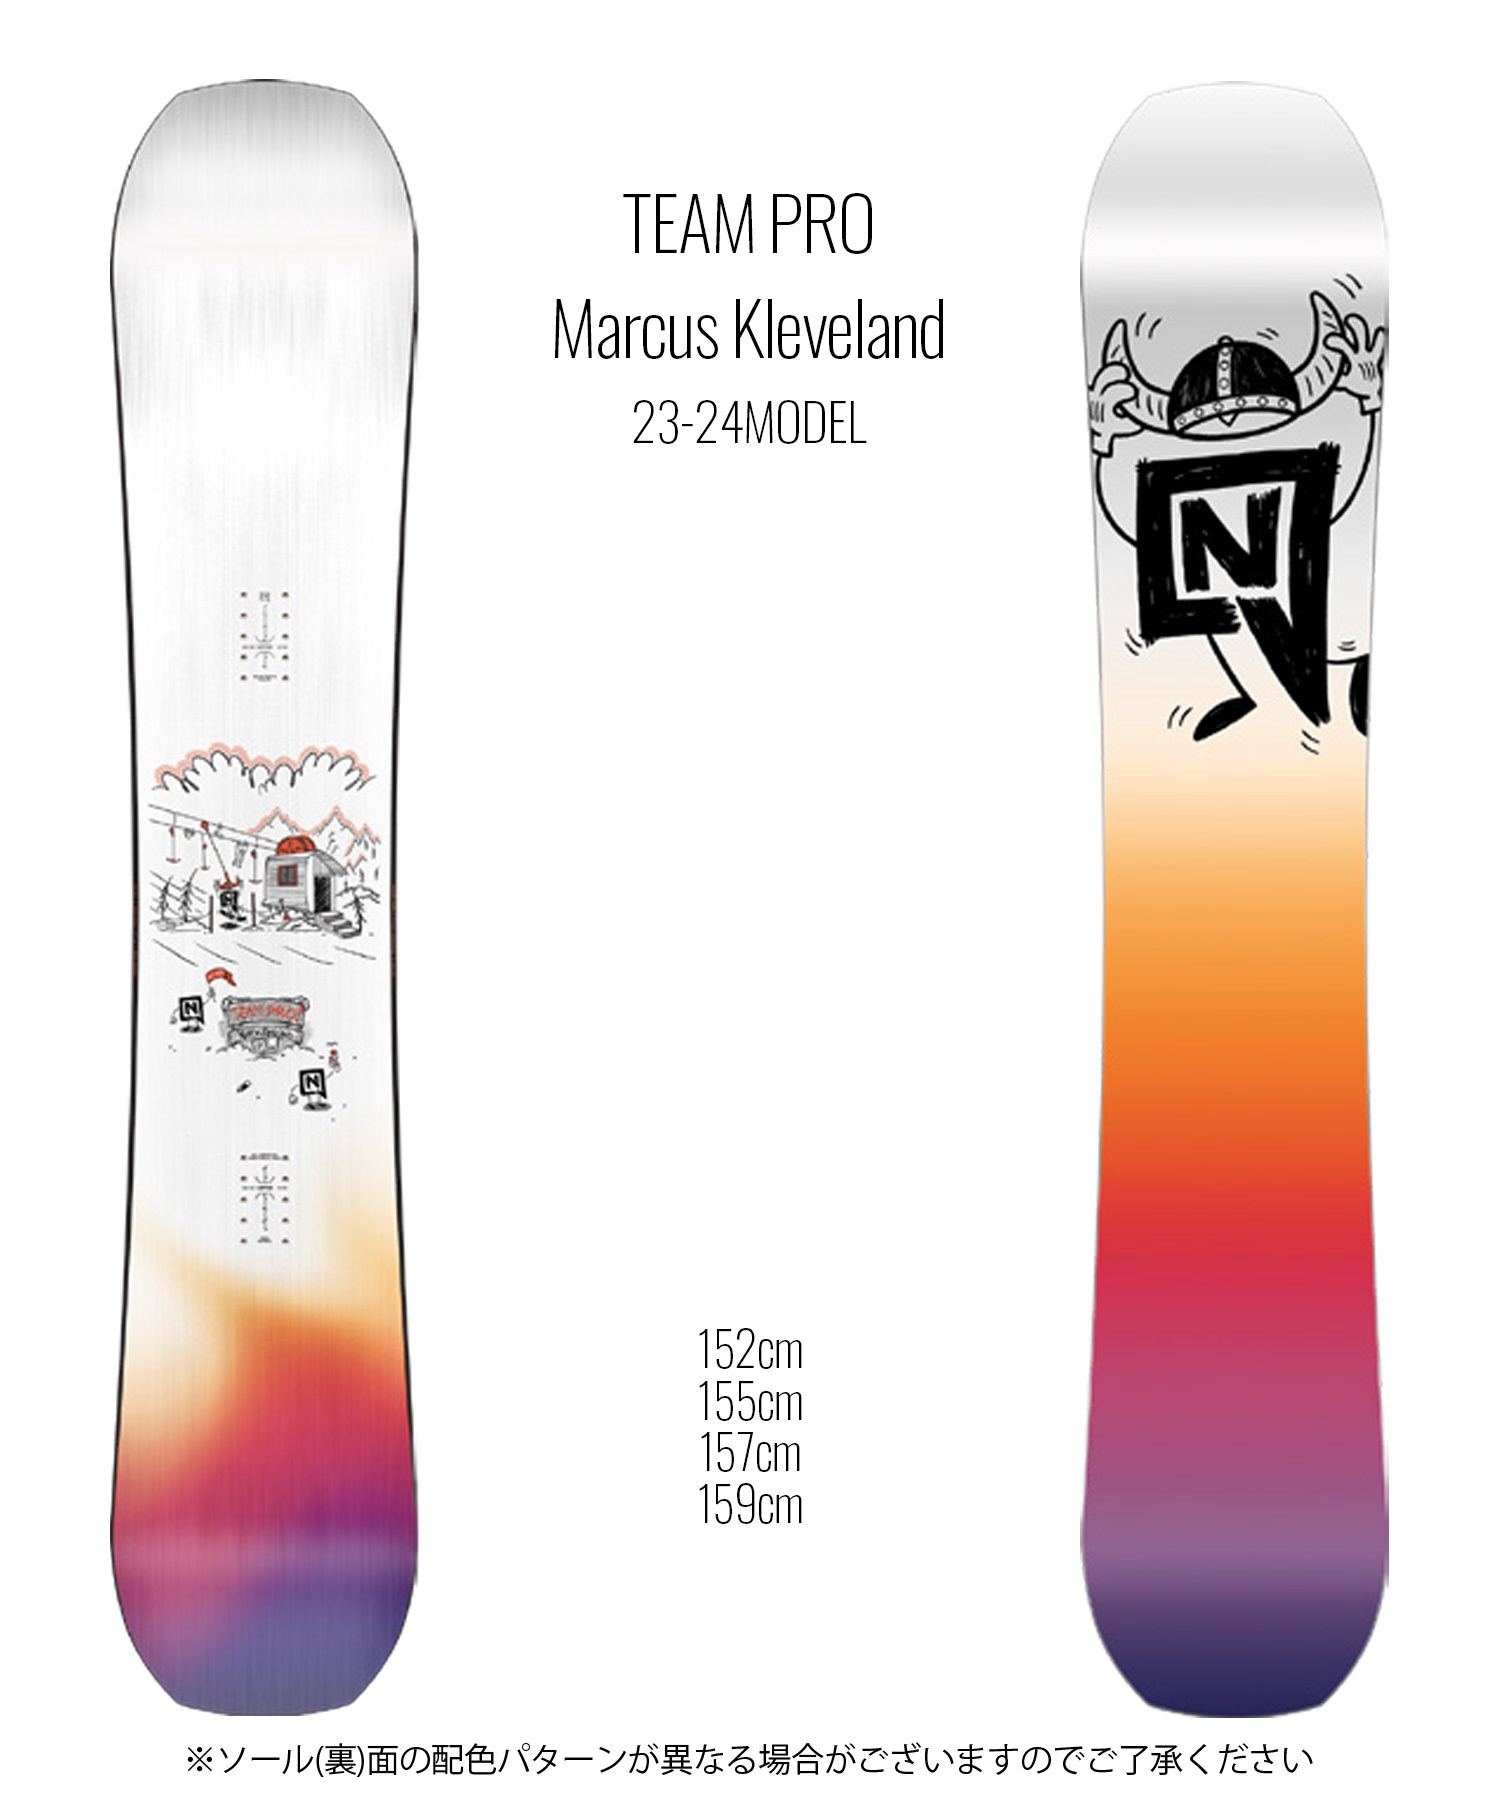 スノーボード 板 メンズ NITRO ナイトロ TEAM PRO Marcus Kleveland 23-24モデル ムラサキスポーツ KK D18(ONECOLOR-152cm)